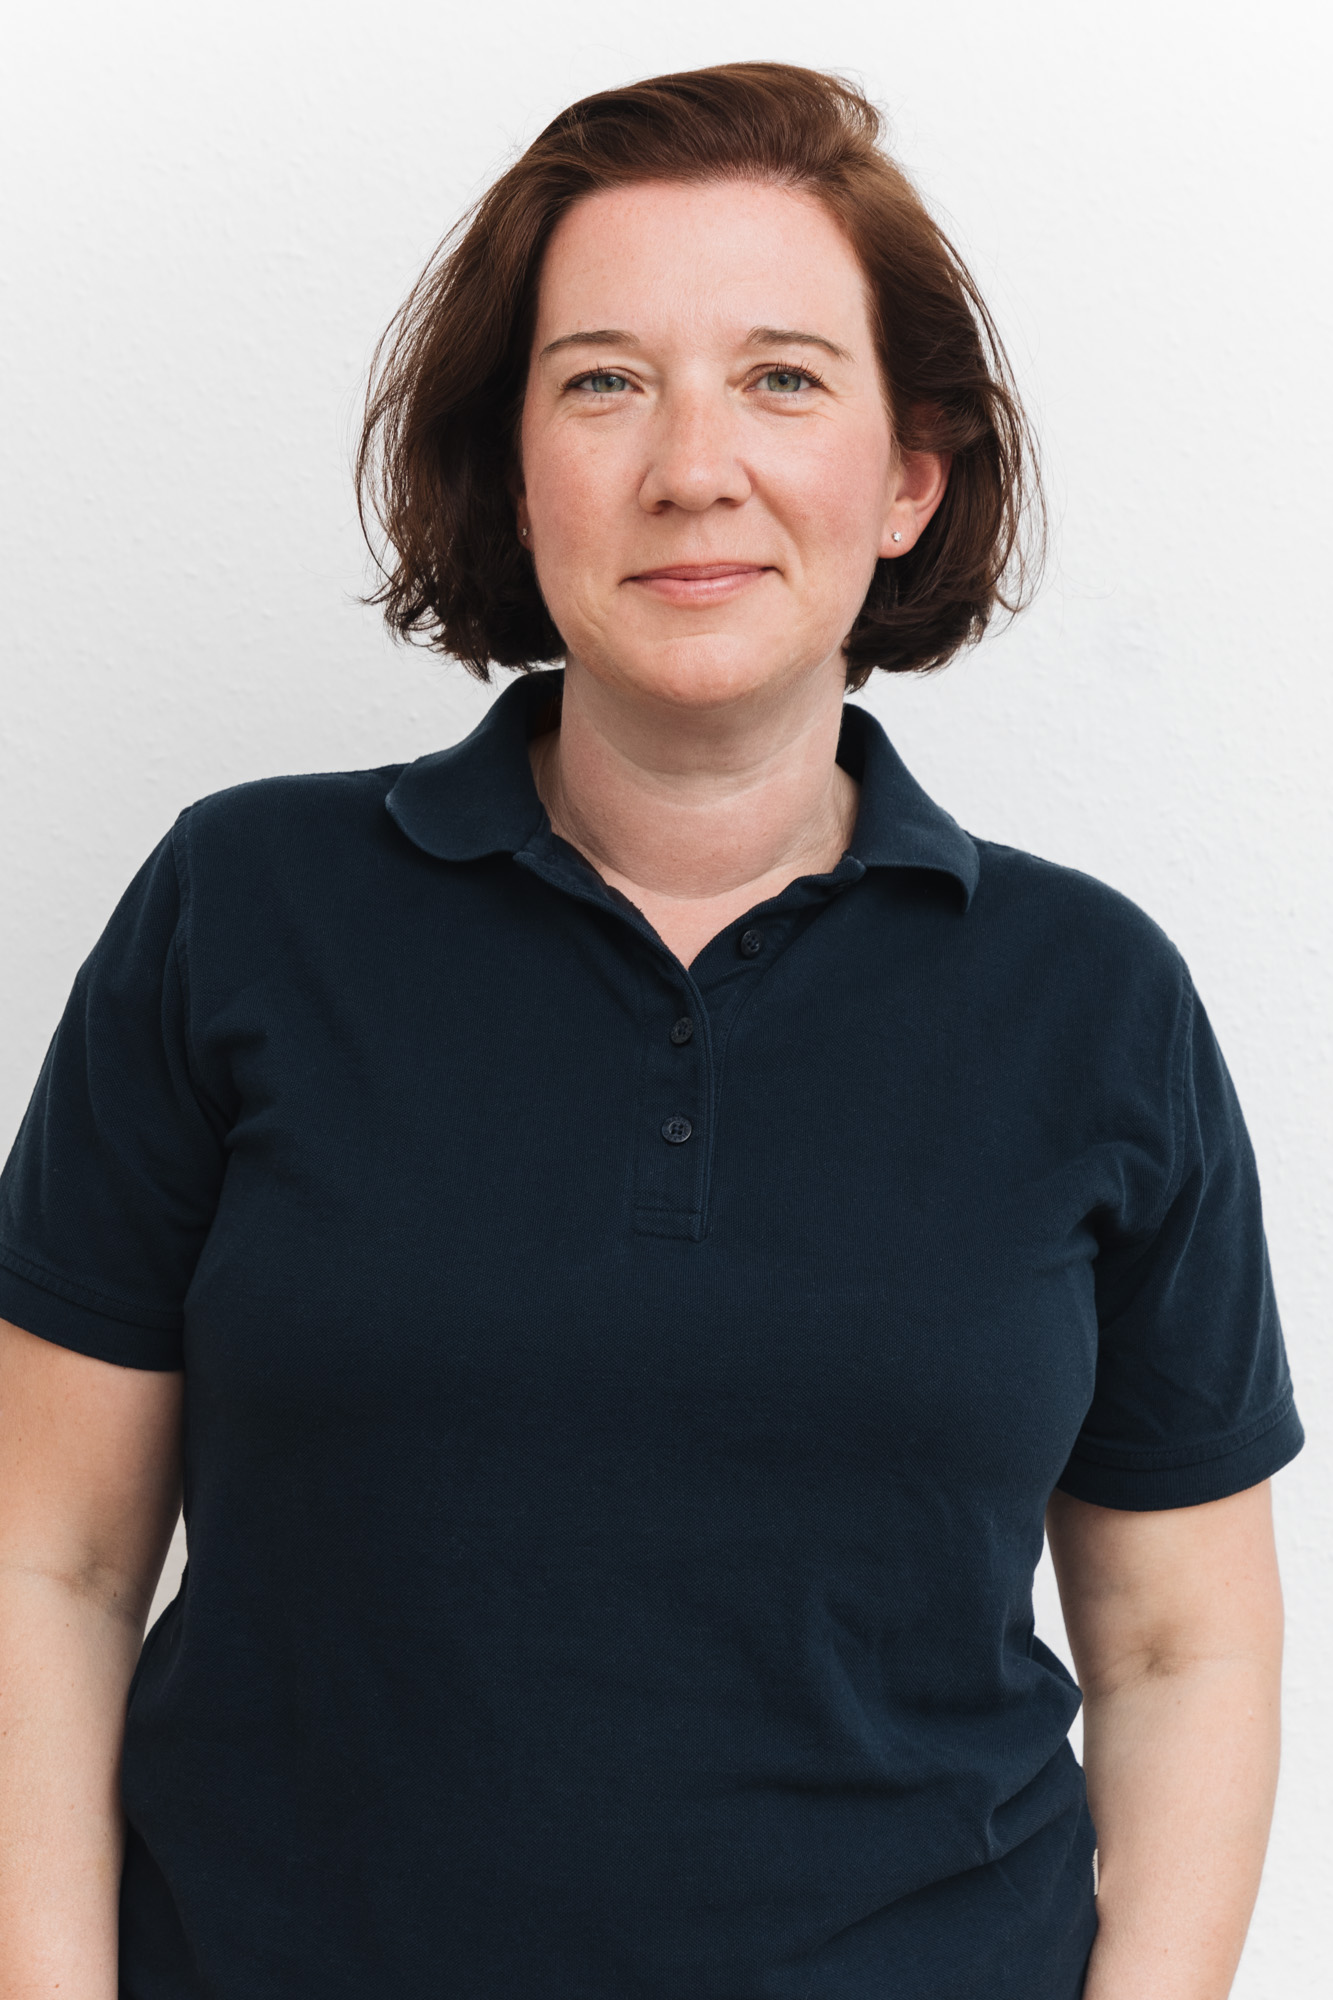 Friederike Gunkel – Die Hausarztpraxis Friederike Gunkel in Würzburg bietet Ihnen eine umfassende Versorgung auf höchstem Niveau - von der Vorsorge bis zur Behandlung akuter und chronischer Erkrankungen.